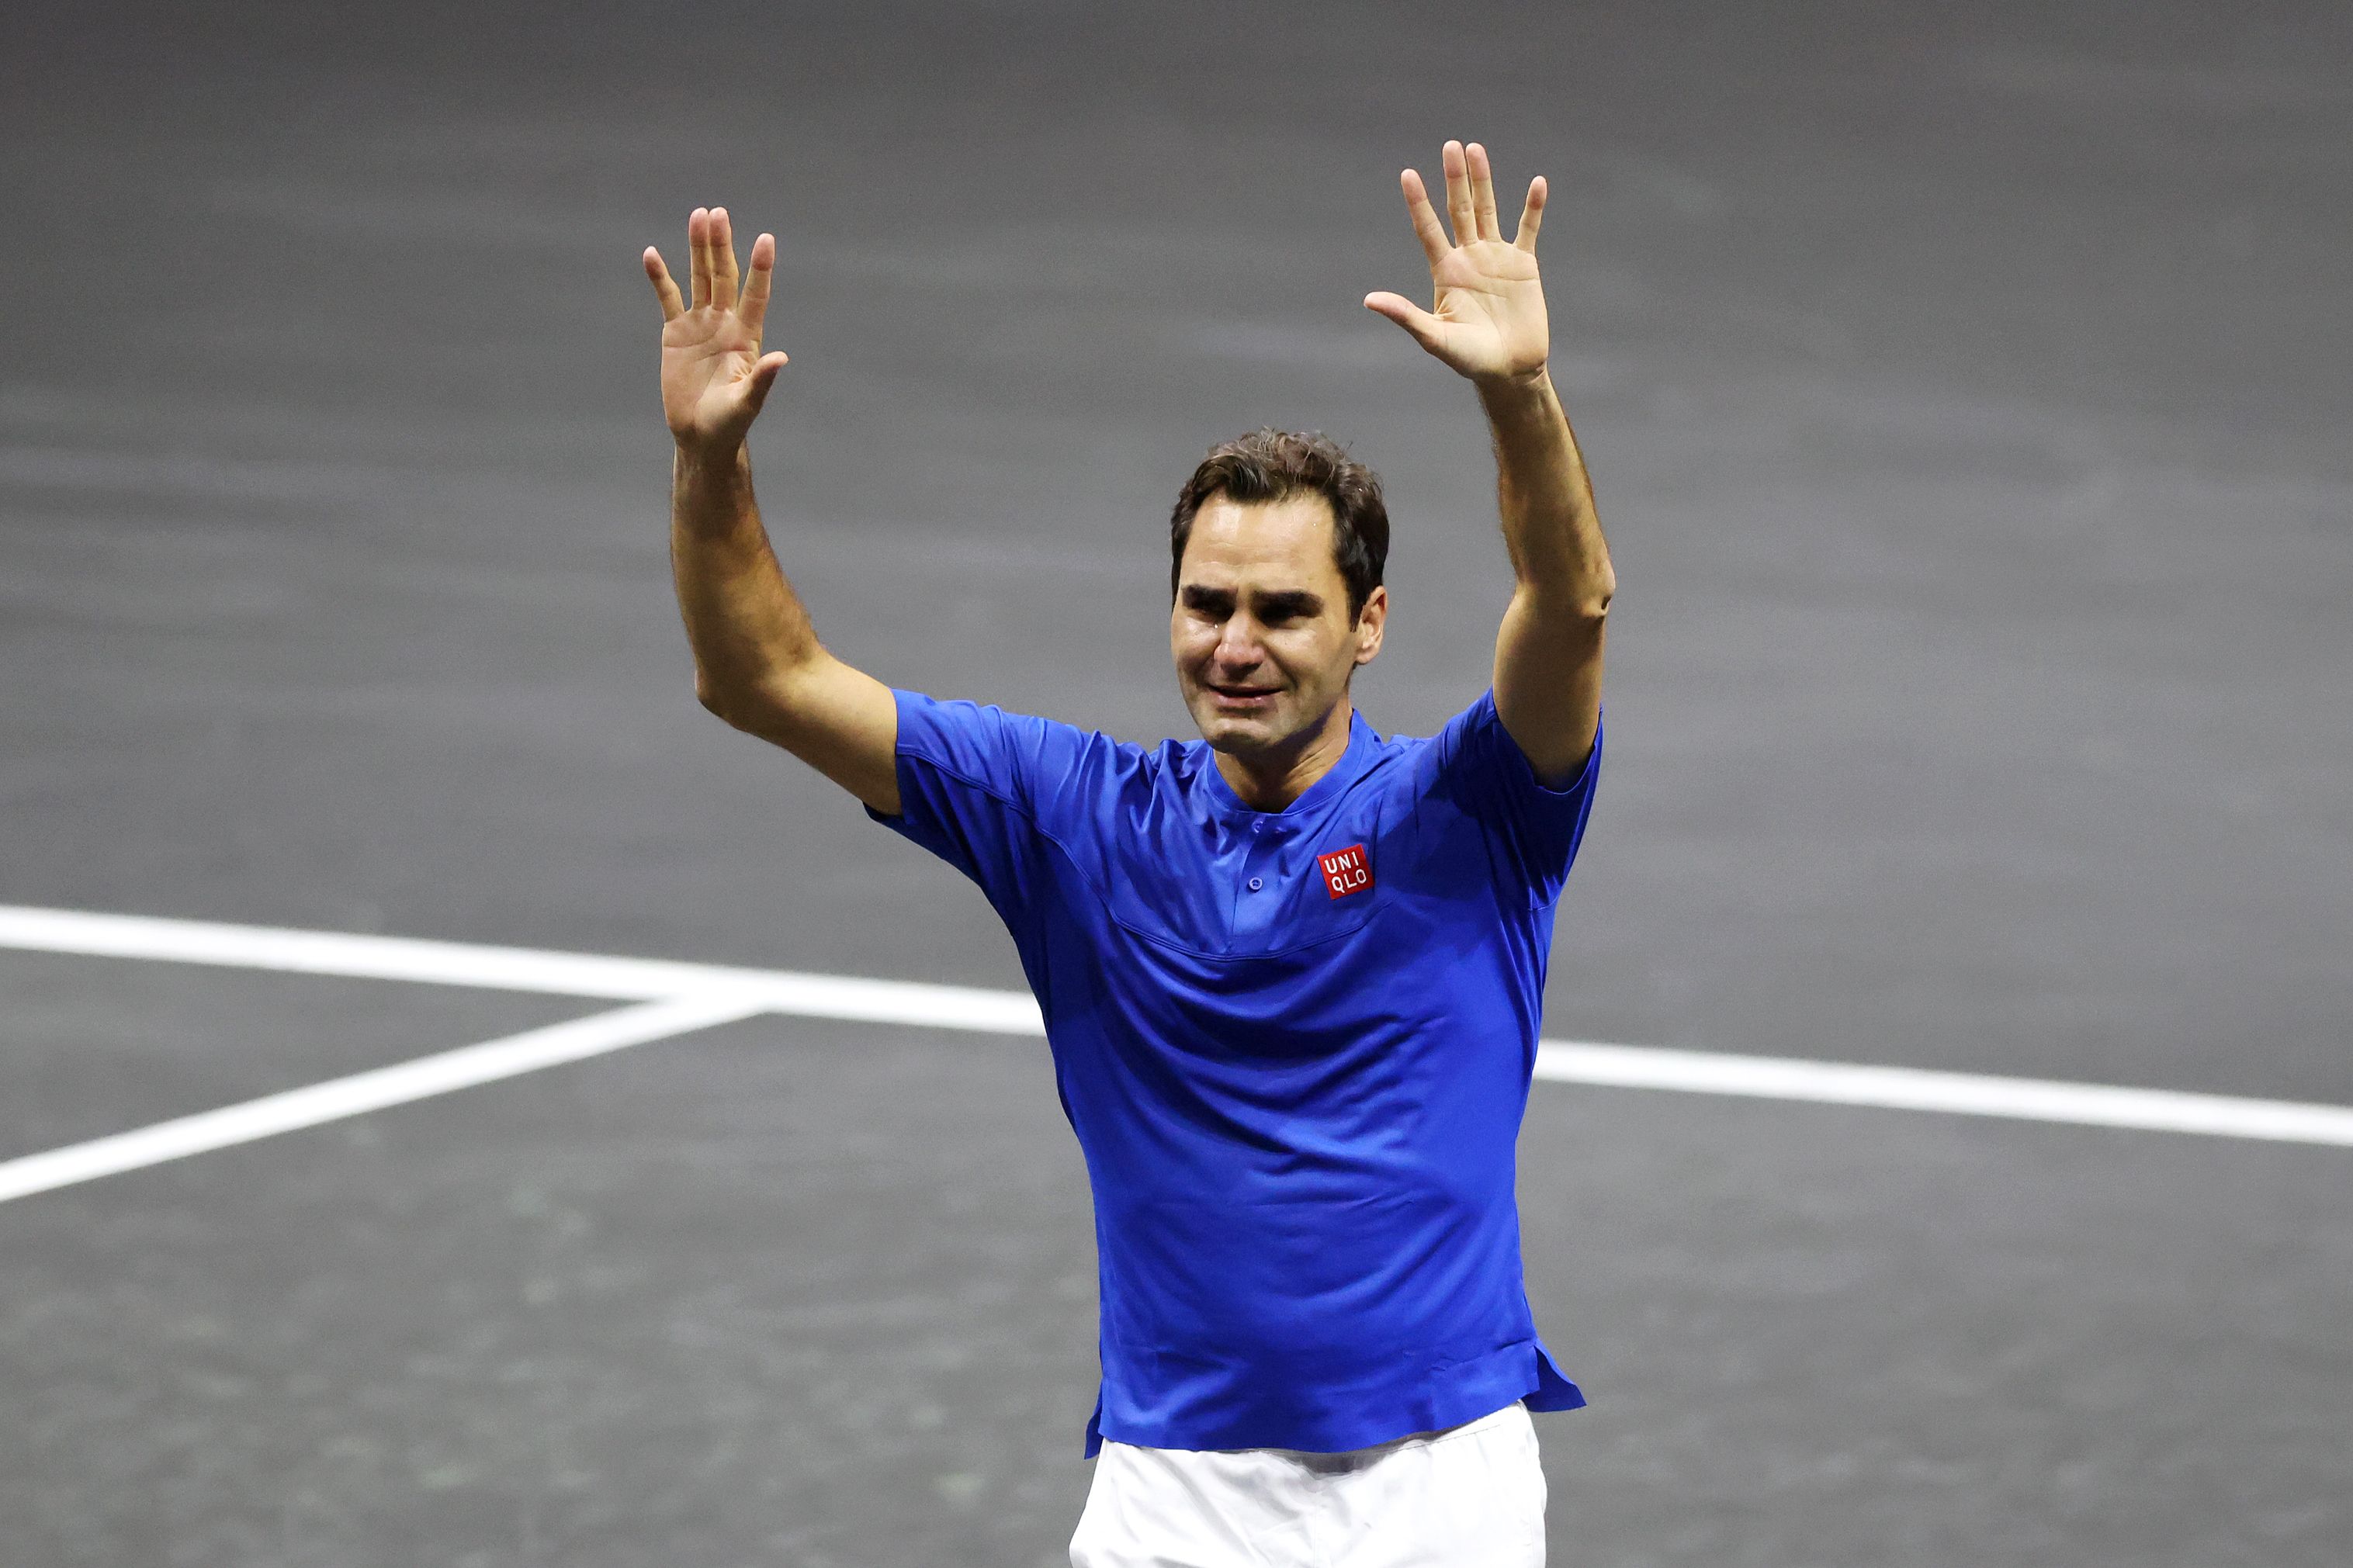 Roger Federer bids tennis farewell